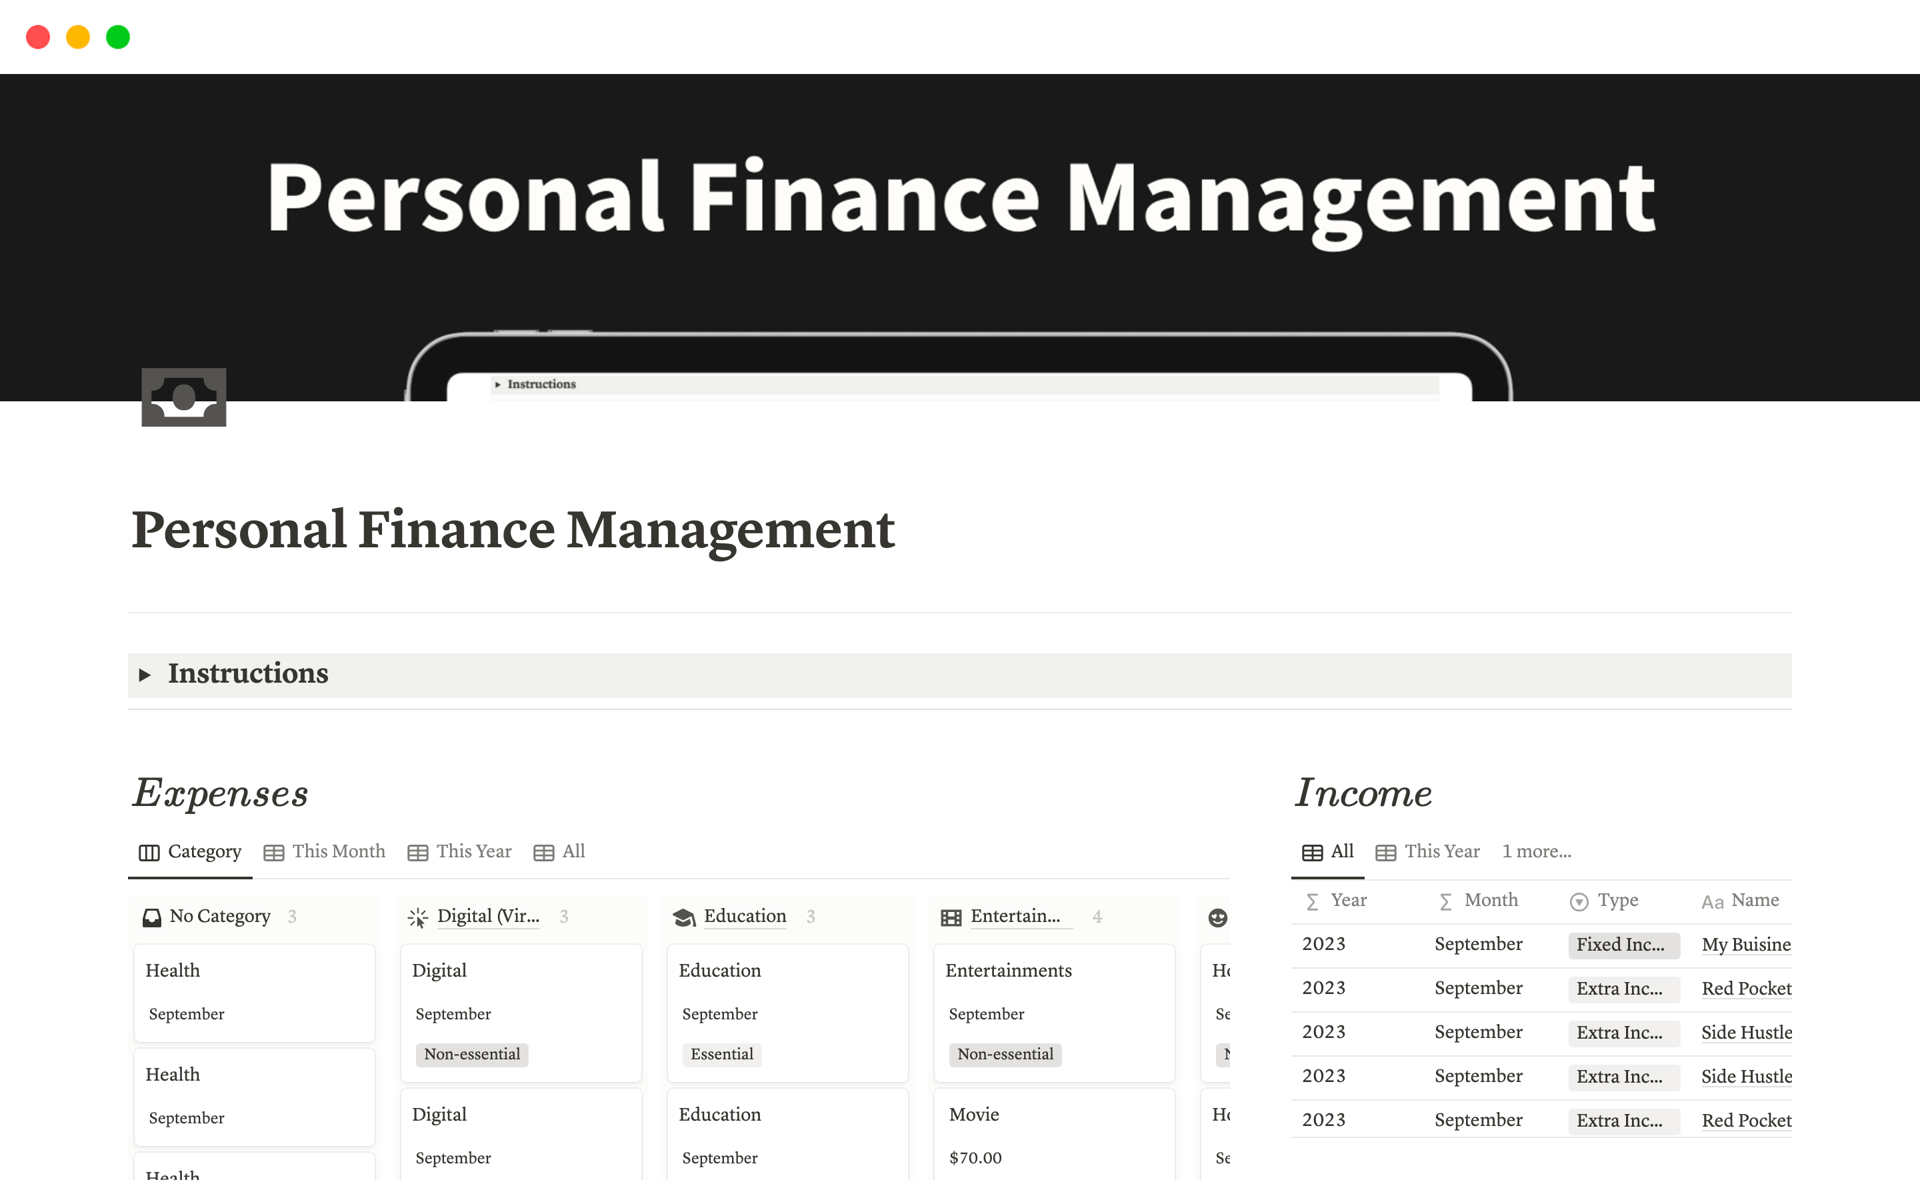 Vista previa de una plantilla para Personal Finance Management